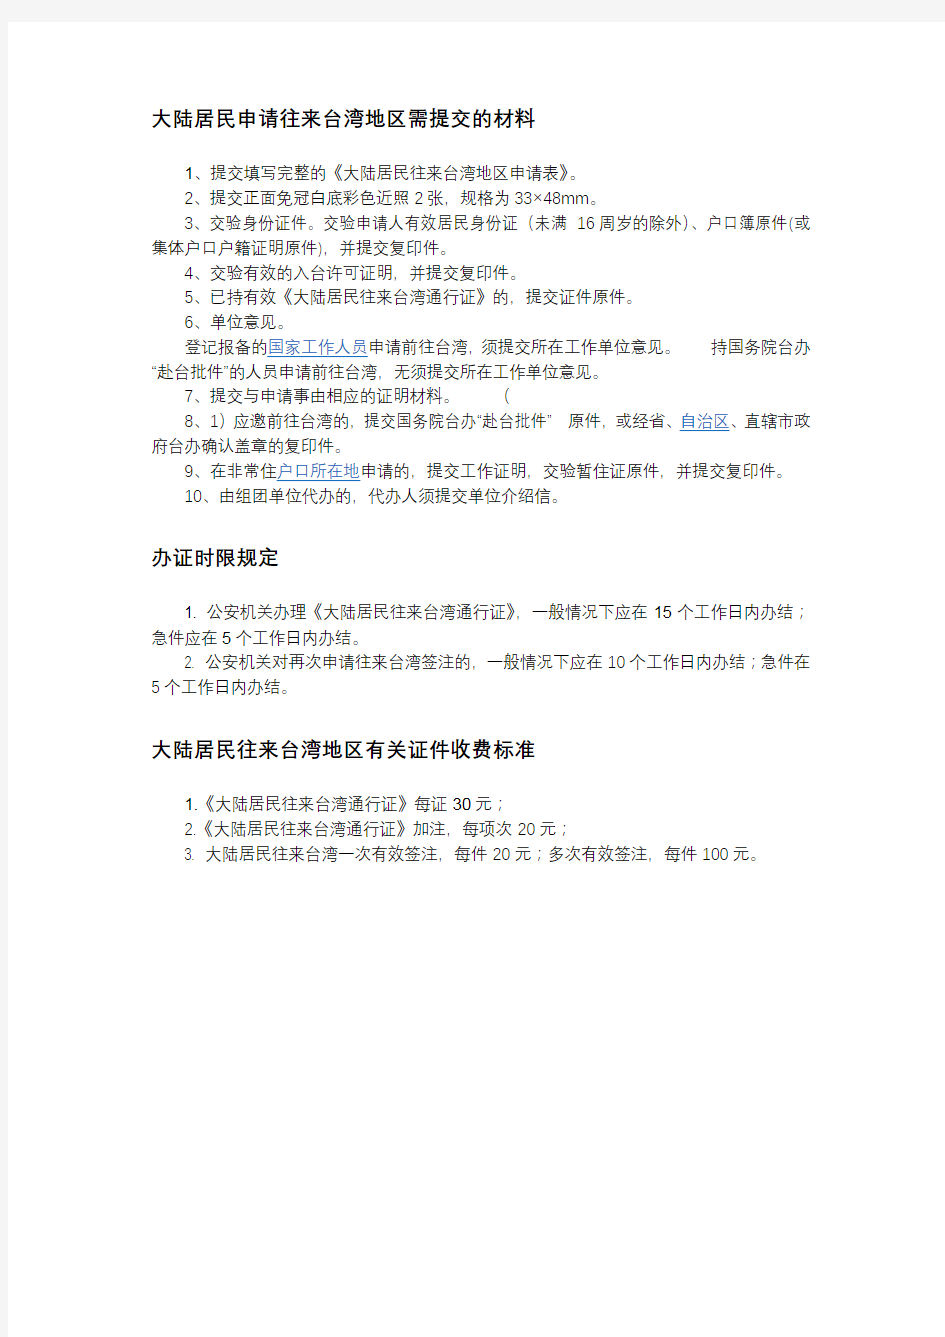 大陆居民申请往来台湾地区需提交的材料【模板】